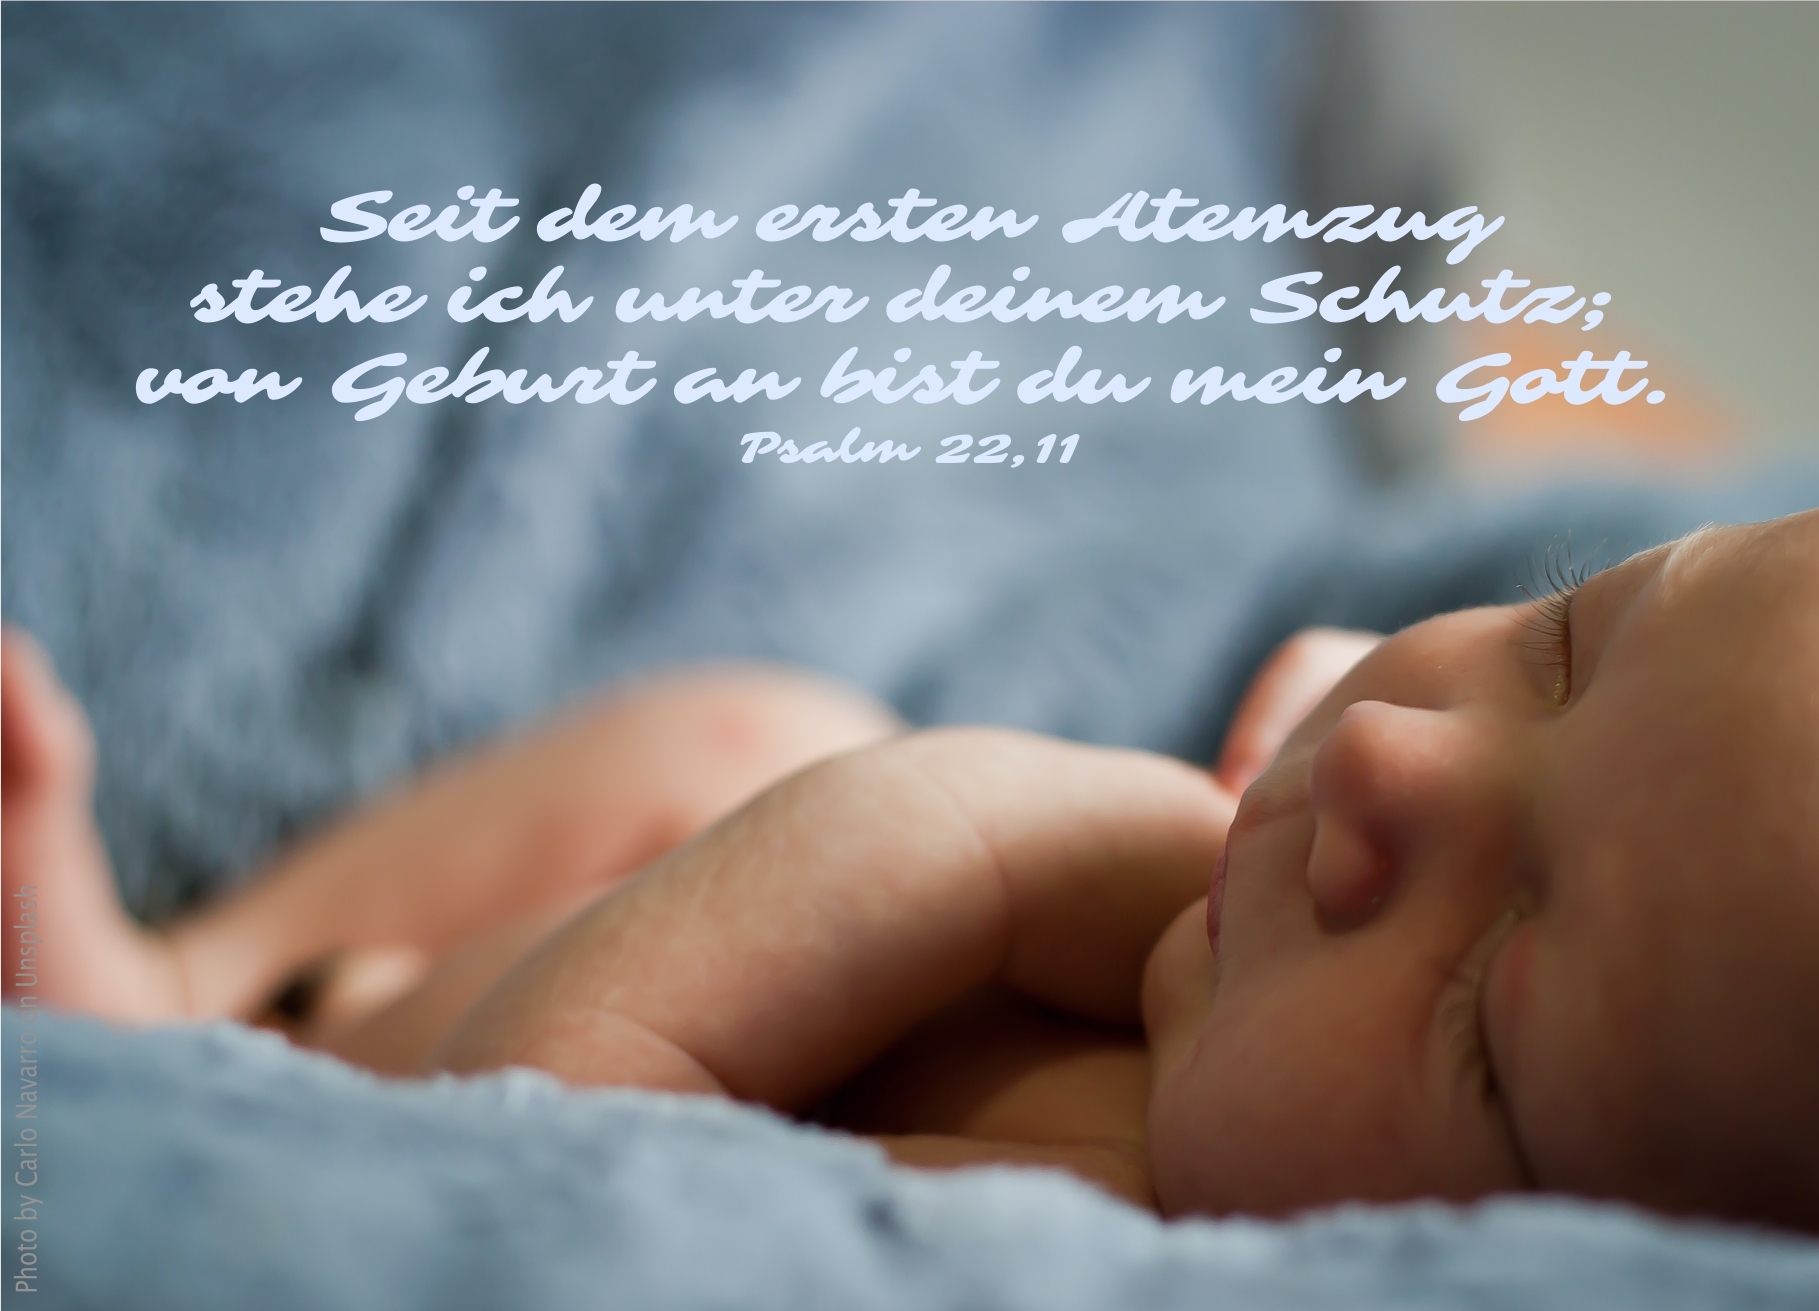 alt="schlafendes_baby_auf_decke_erwartet_bibelhoerbuch_weisheit_gottes"